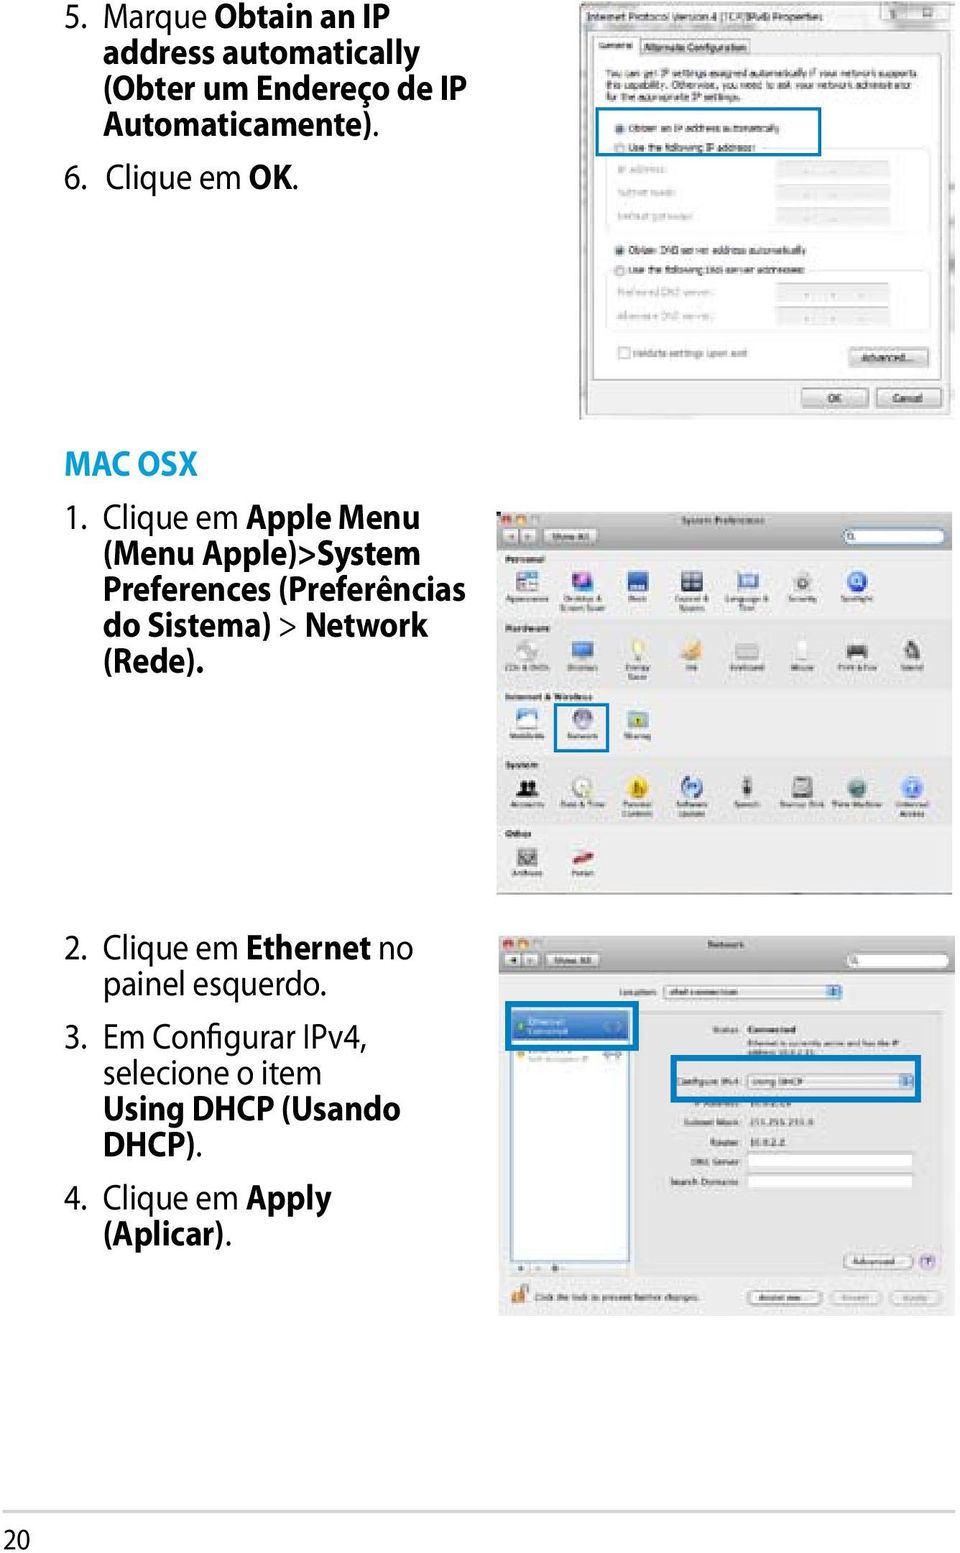 Clique em Apple Menu (Menu Apple)>System Preferences (Preferências do Sistema) > Network